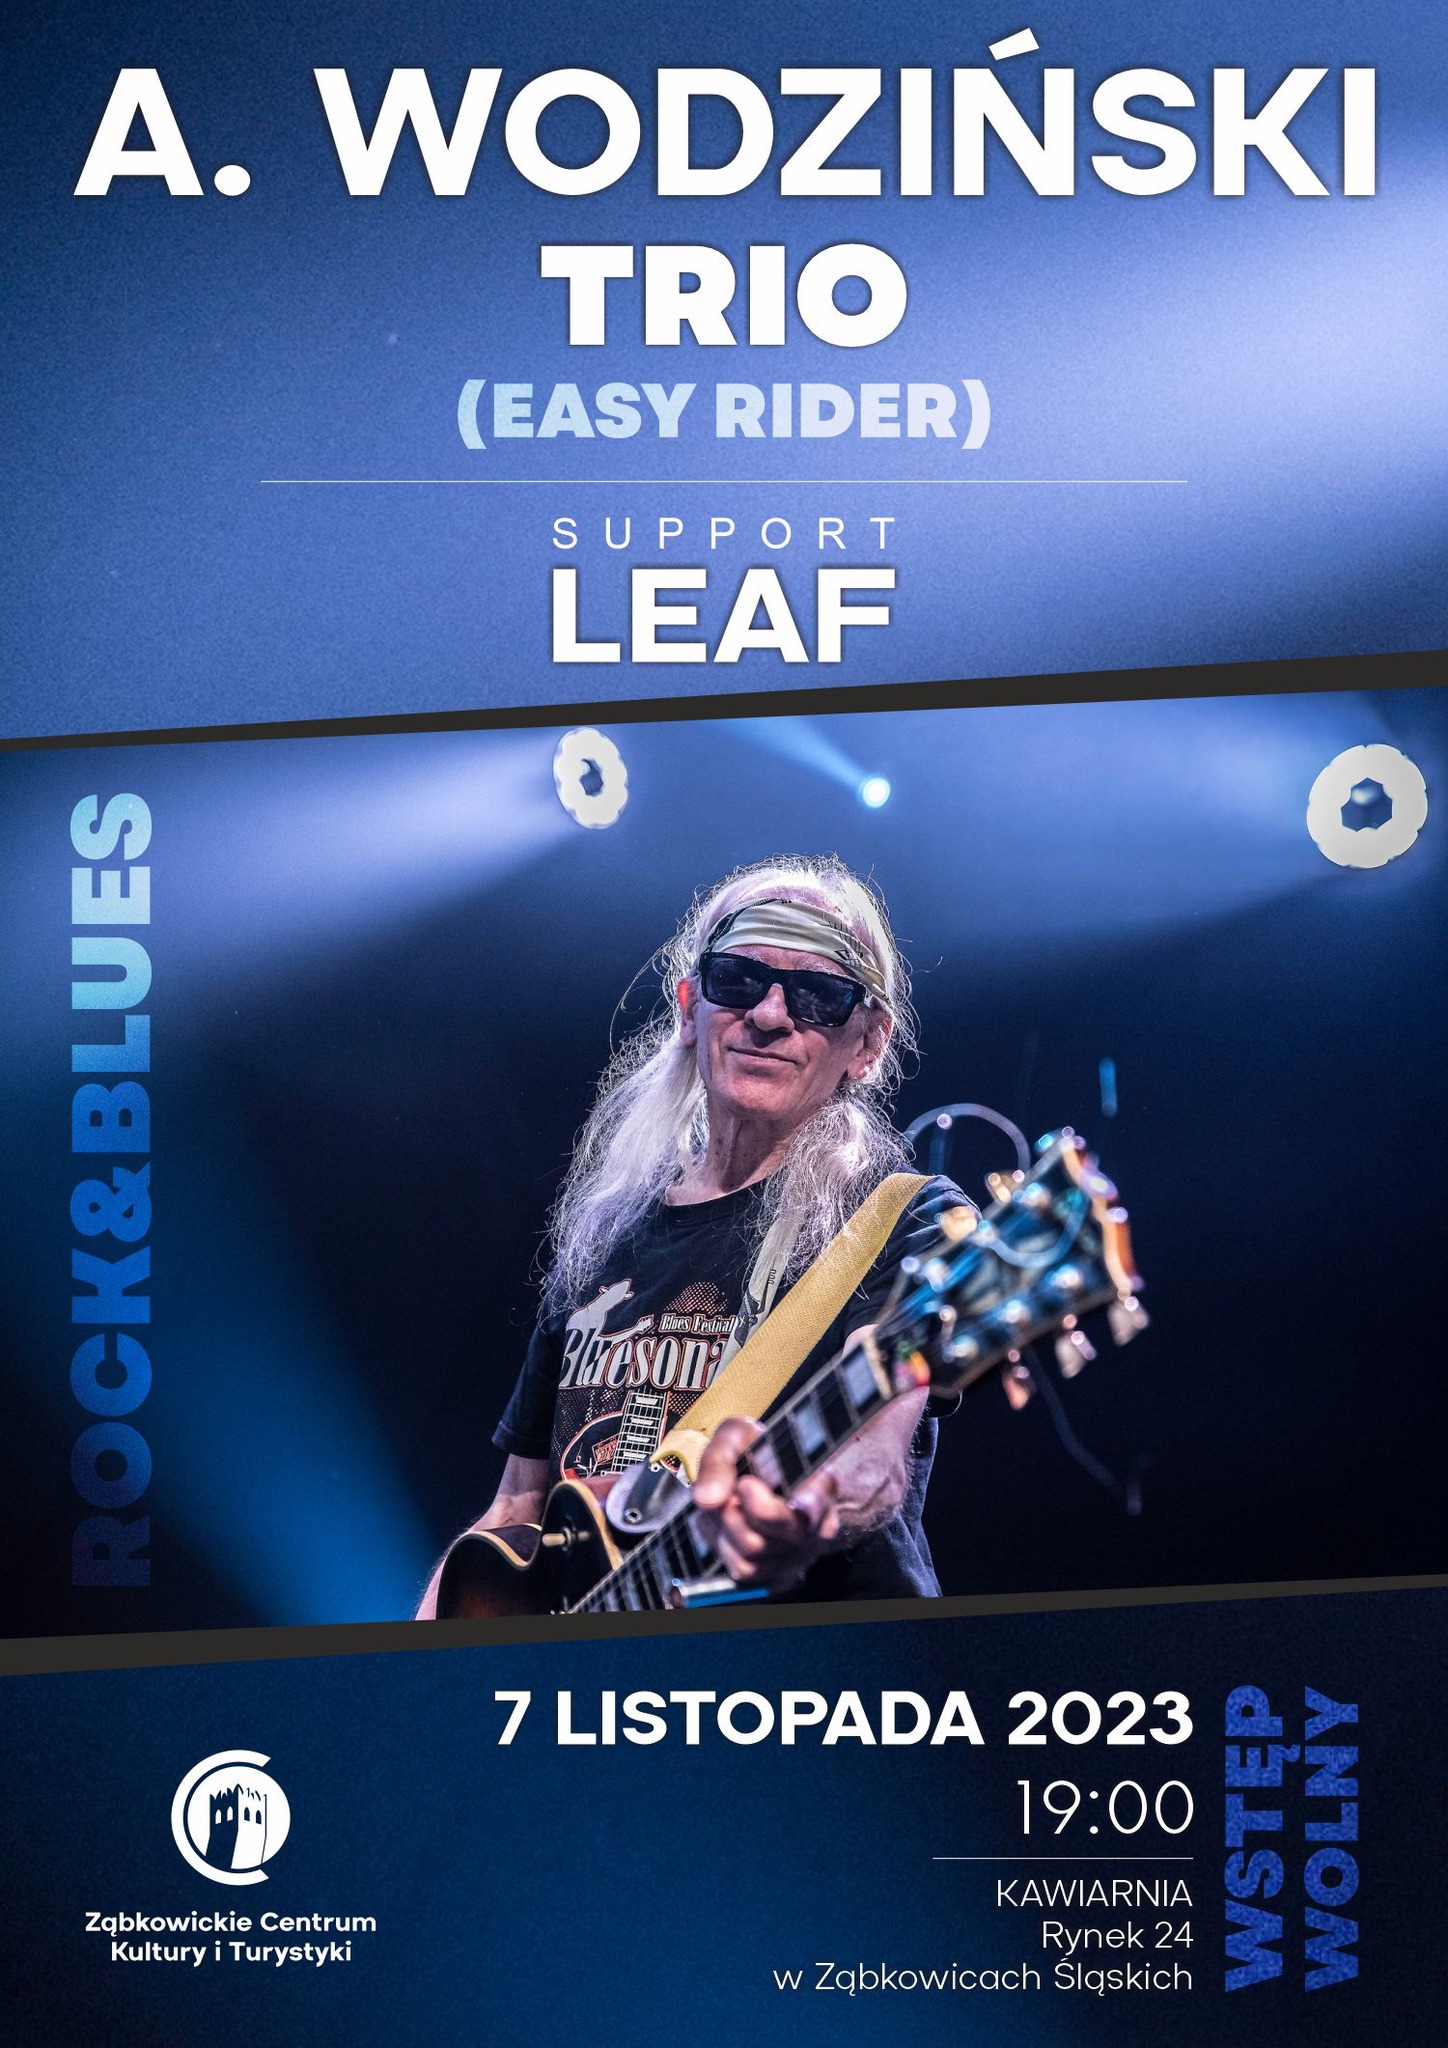 Plakat informujący o koncercie Andrzeja Wodzińskiego "Easy Rider" 7 listopada 2023 o godzinie 19:00 w kawiarni Ząbkowickiego Centrum Kultury i Turystyki. Na plakacie znajduje się mężczyzna w siwych, długich włosach, czarnej koszulce i okularach przeciwsłonecznych, trzymający gitarę.